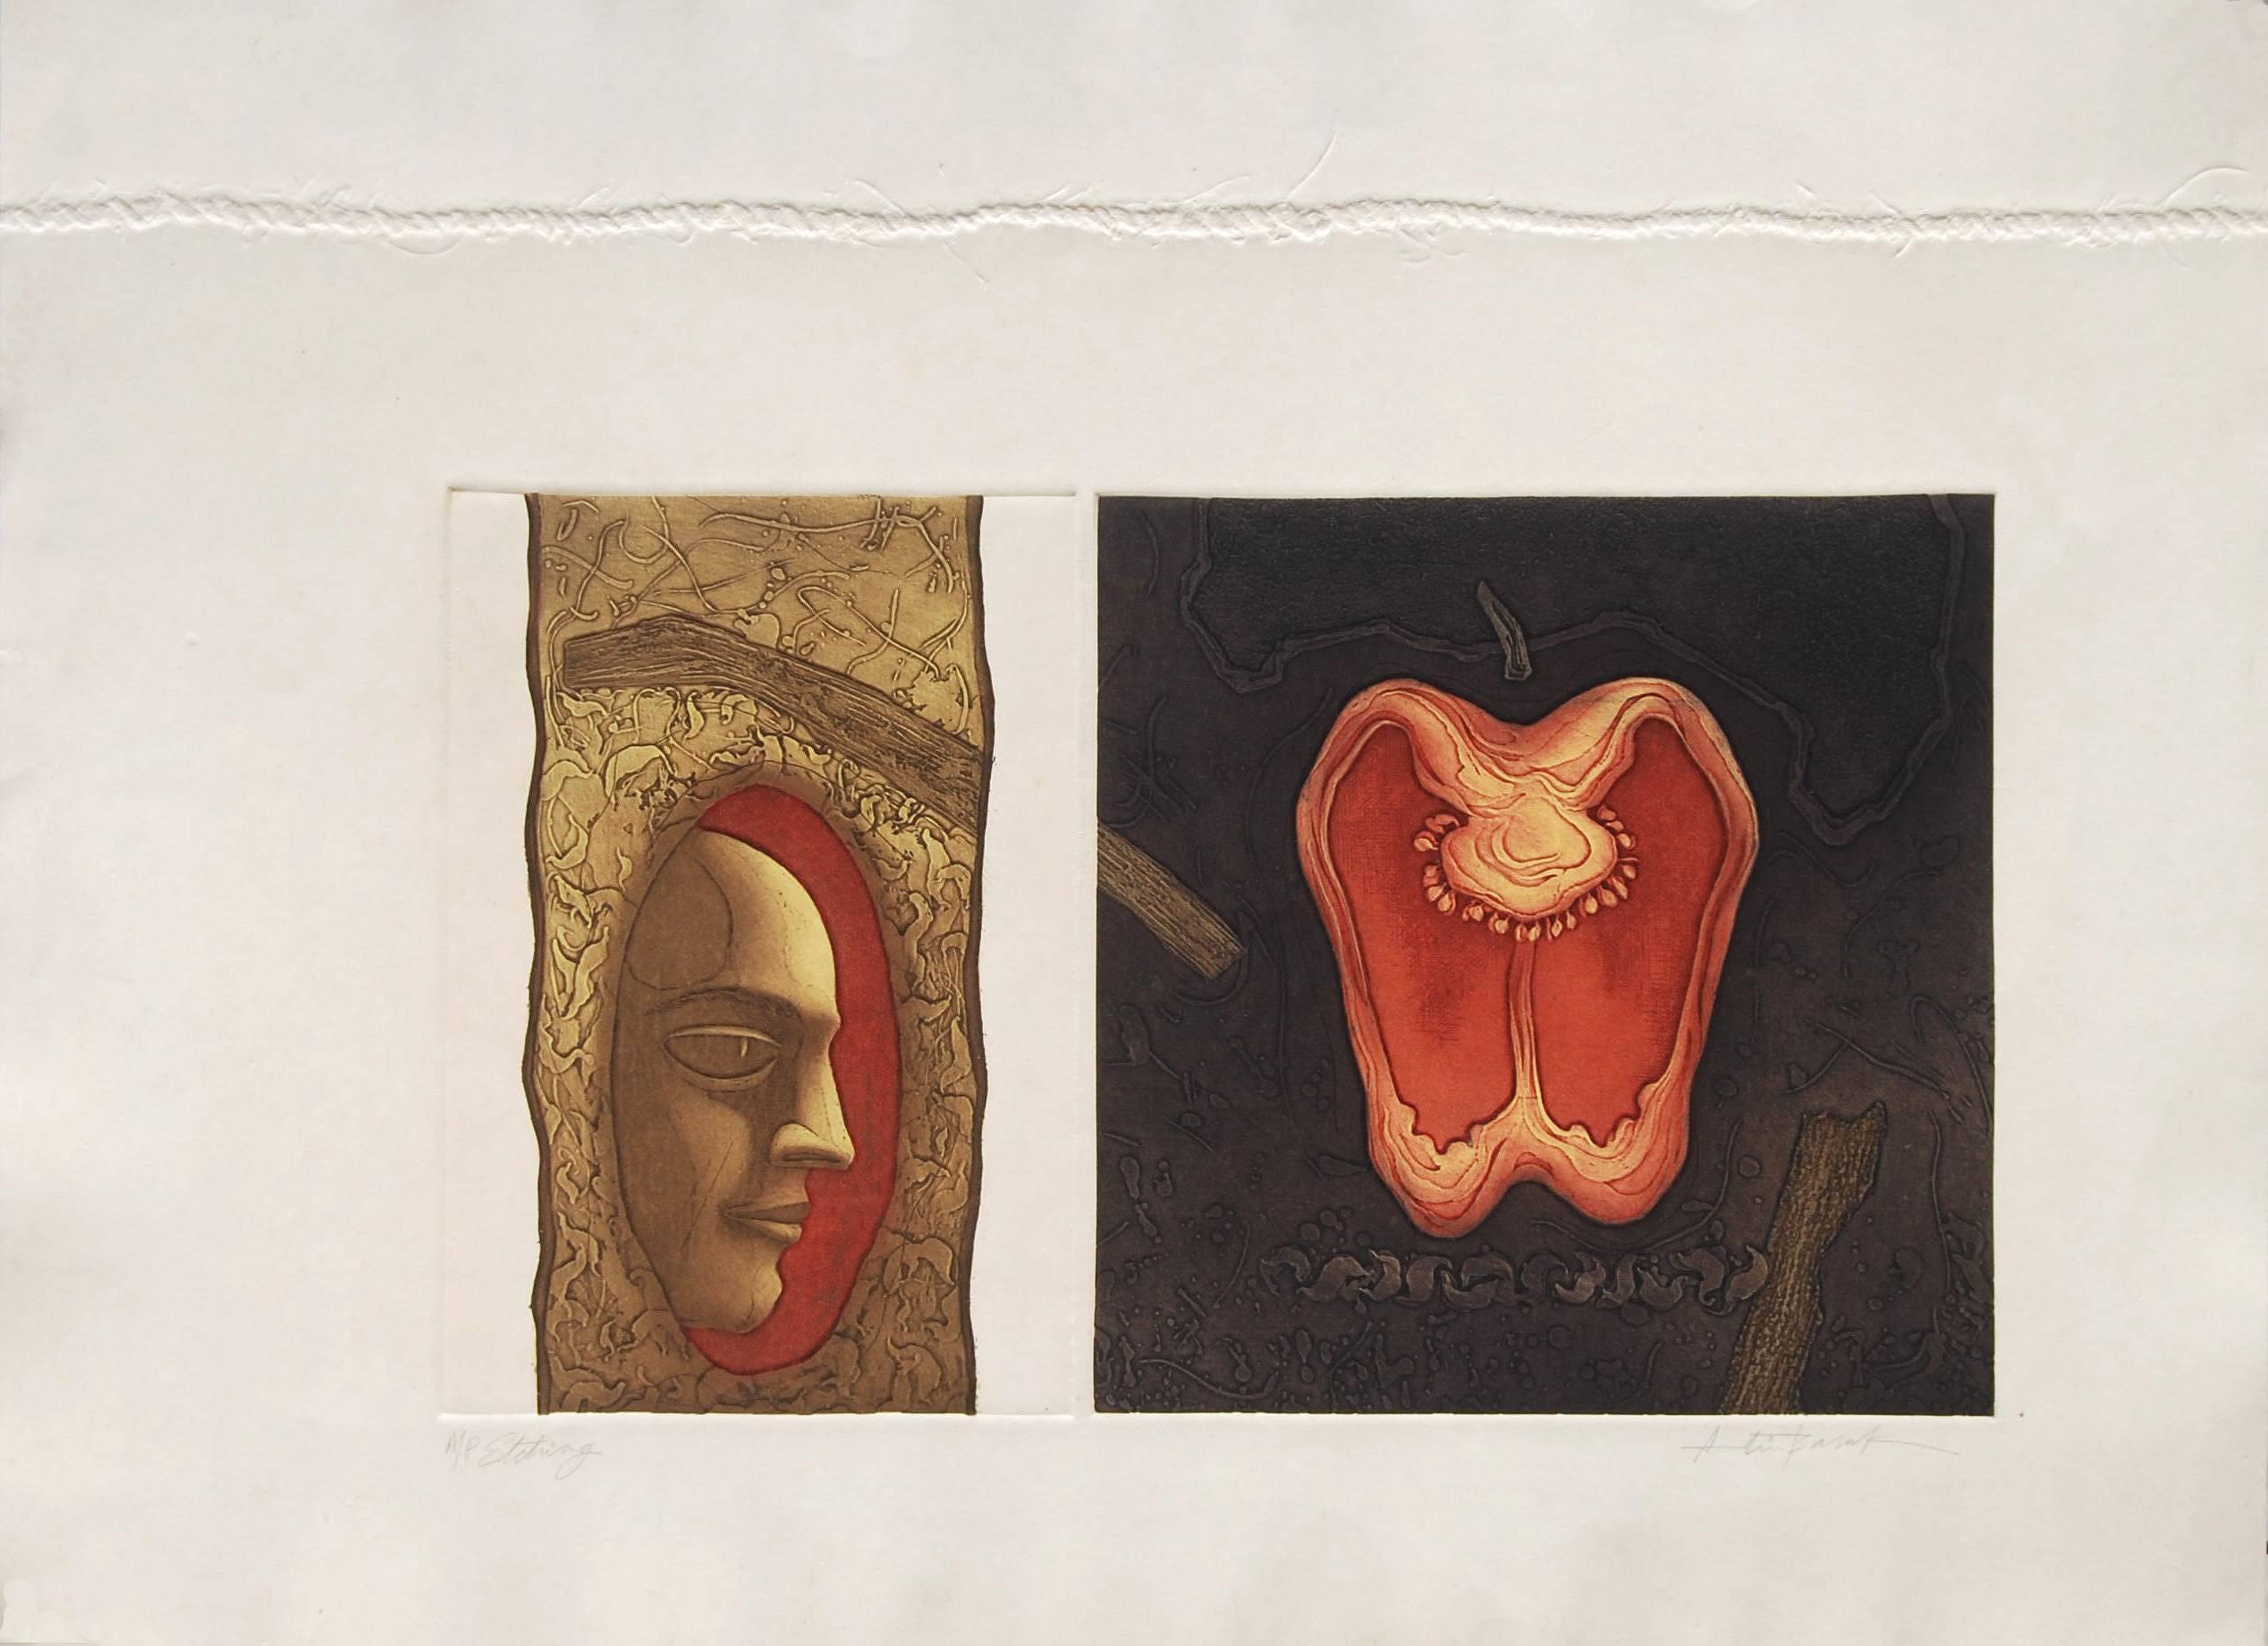 Face & Apple, Radierung auf Papier, Braun, Rot & Gelb von indischer Künstler „“ auf Lager“